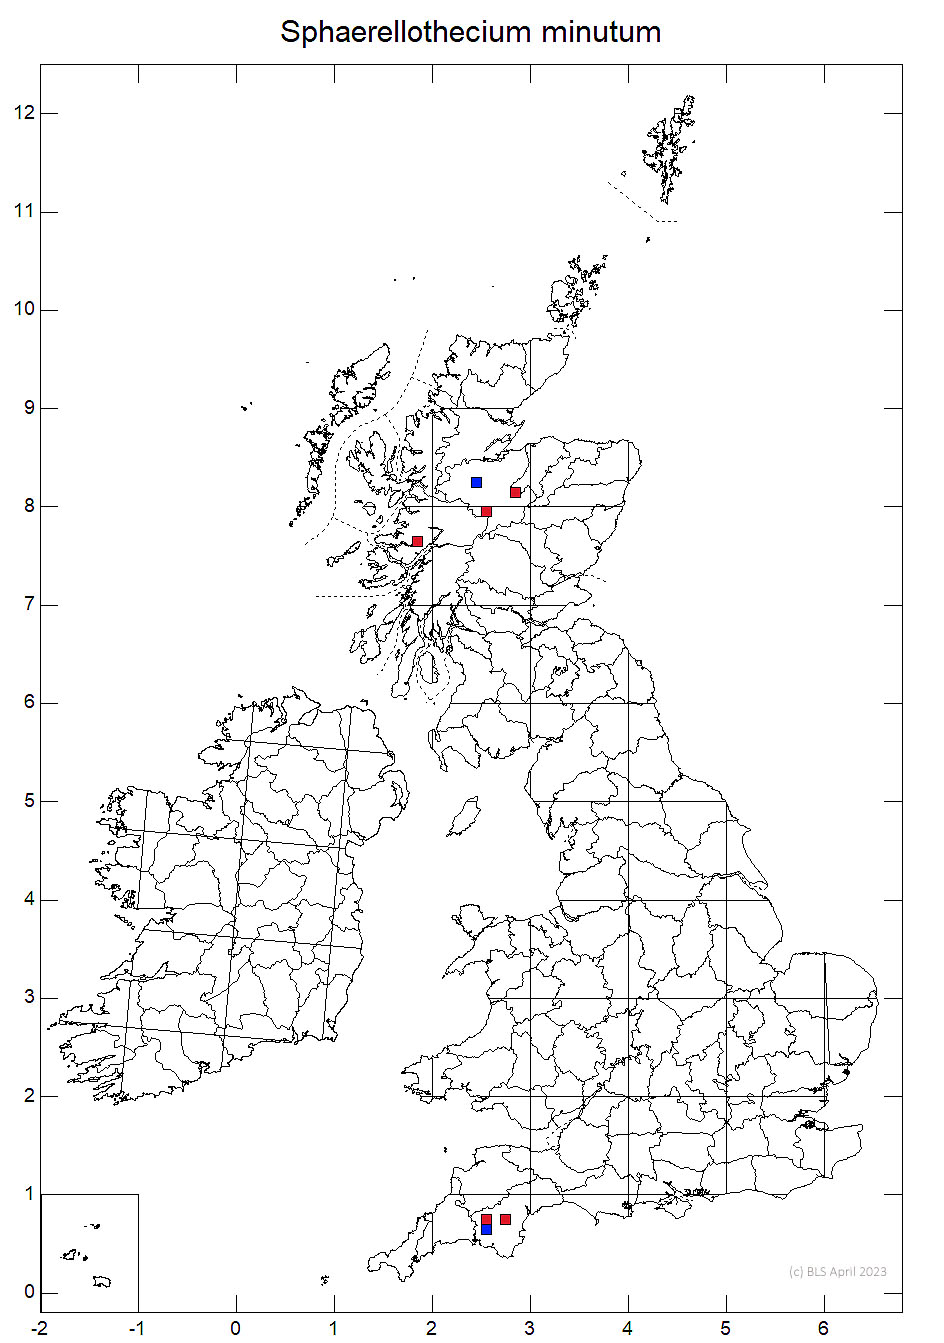 Sphaerellothecium minutum 10km sq distribution map